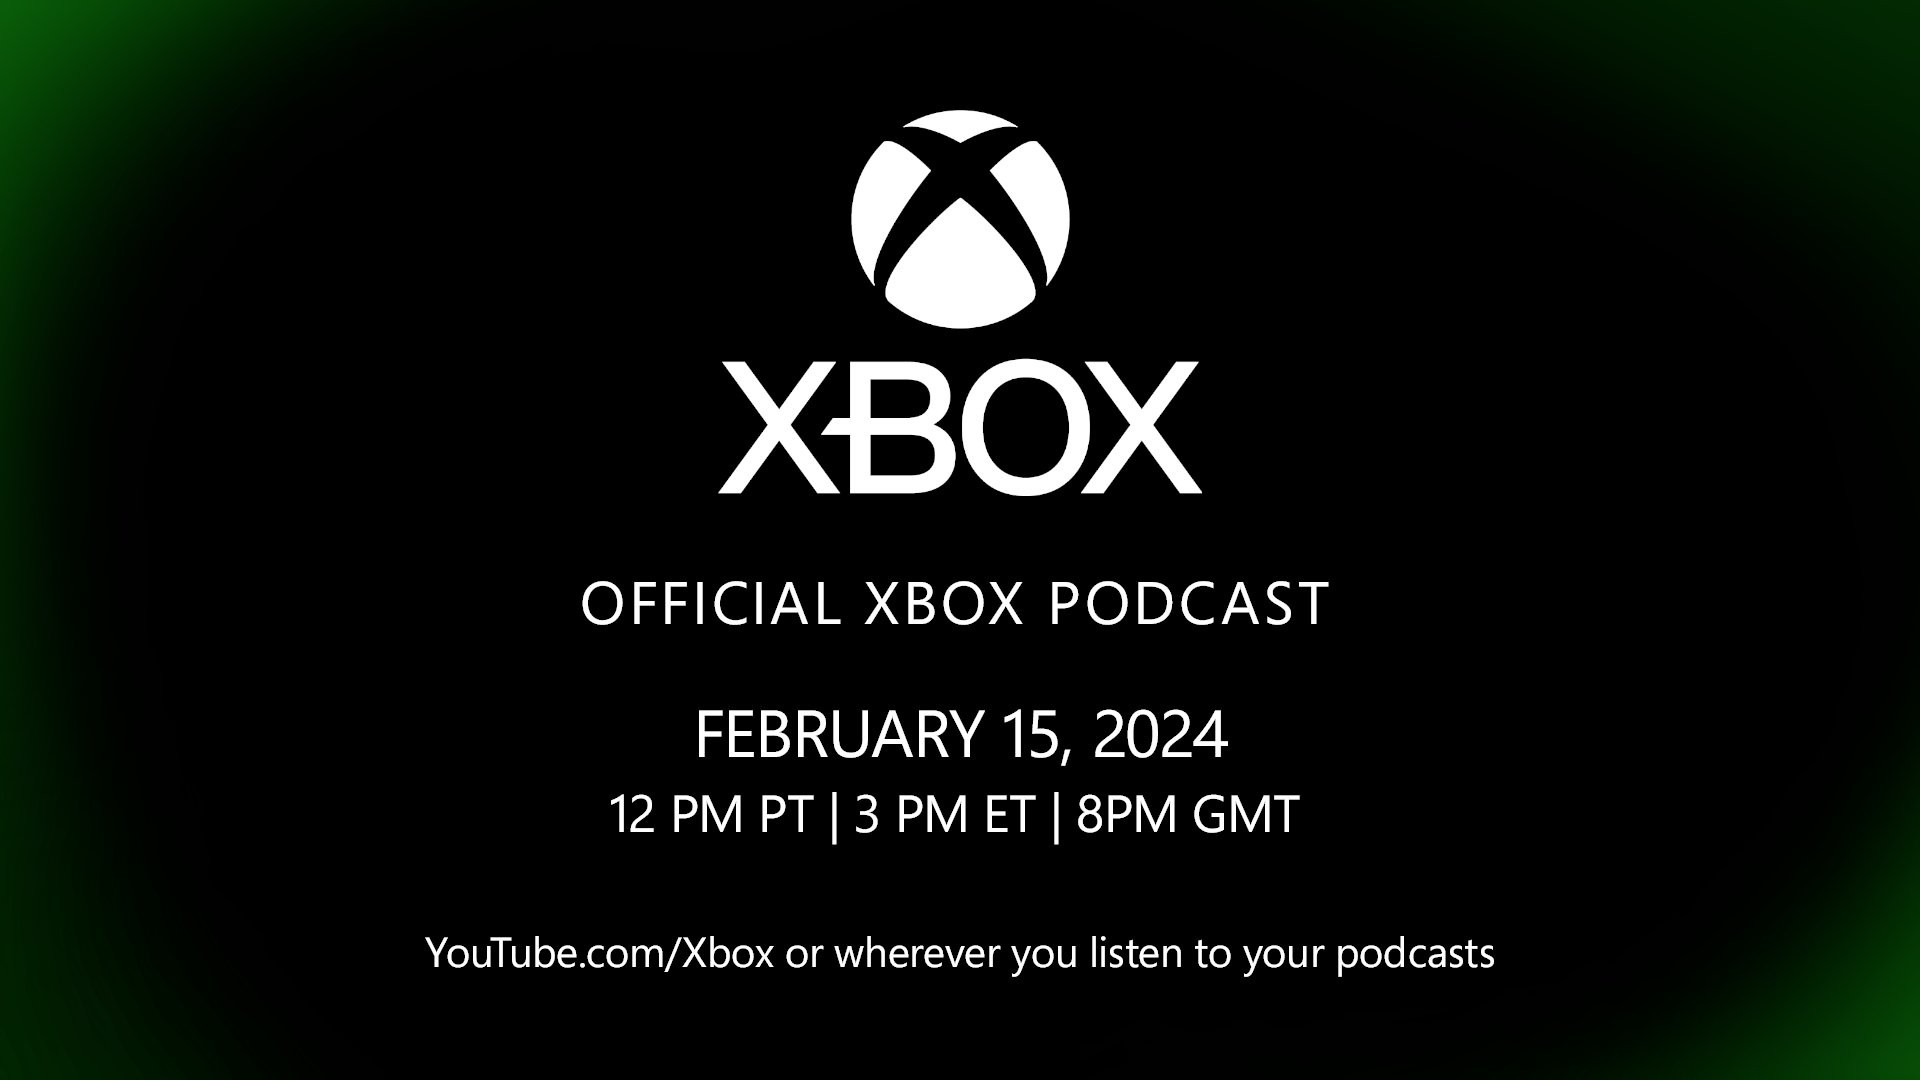 Przyszłość Xboxa: Jak obejrzeć wydarzenie na żywo i czego się spodziewać?  |  X-Box